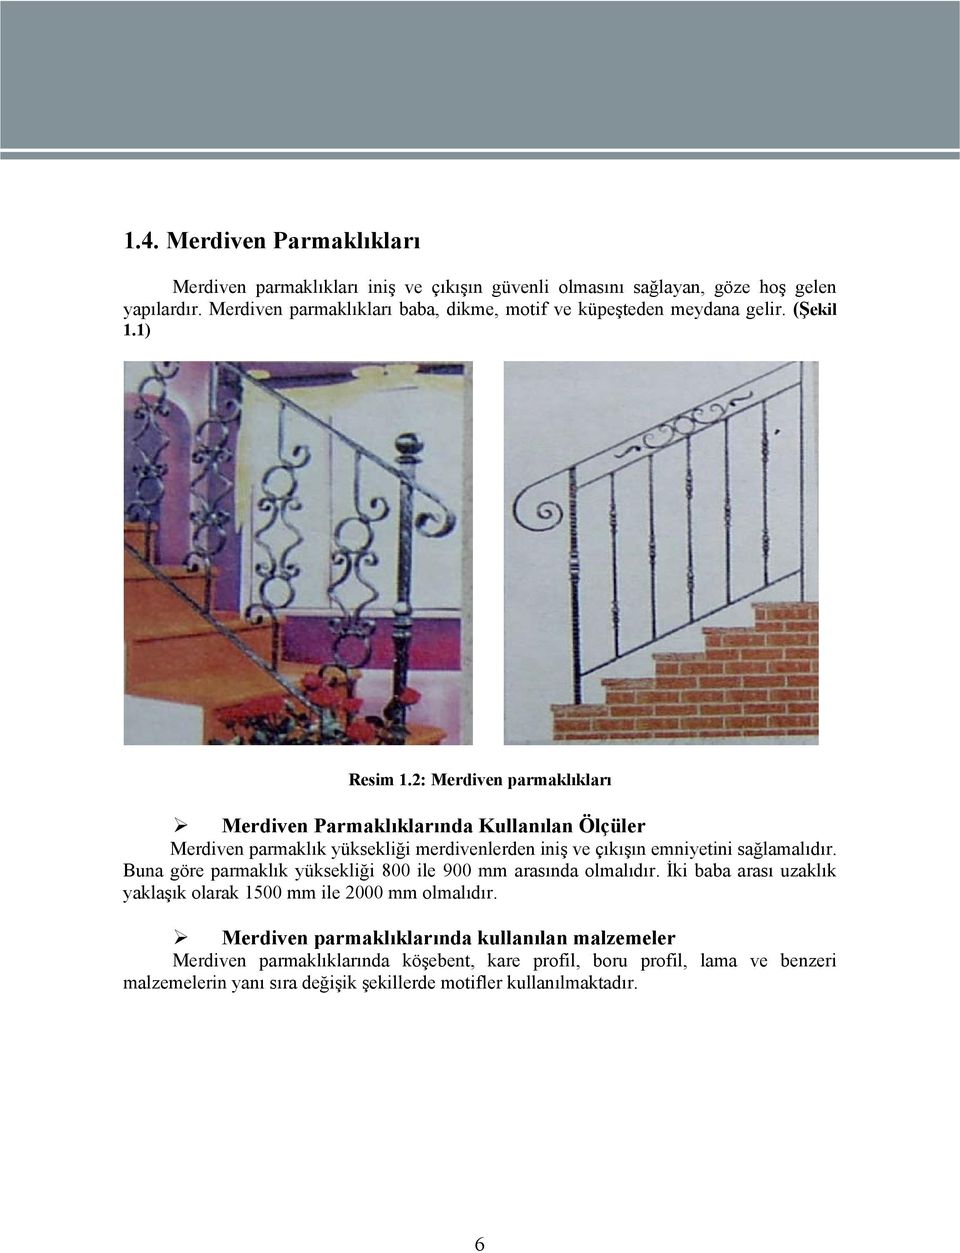 2: Merdiven parmaklıkları Merdiven Parmaklıklarında Kullanılan Ölçüler Merdiven parmaklık yüksekliği merdivenlerden iniş ve çıkışın emniyetini sağlamalıdır.